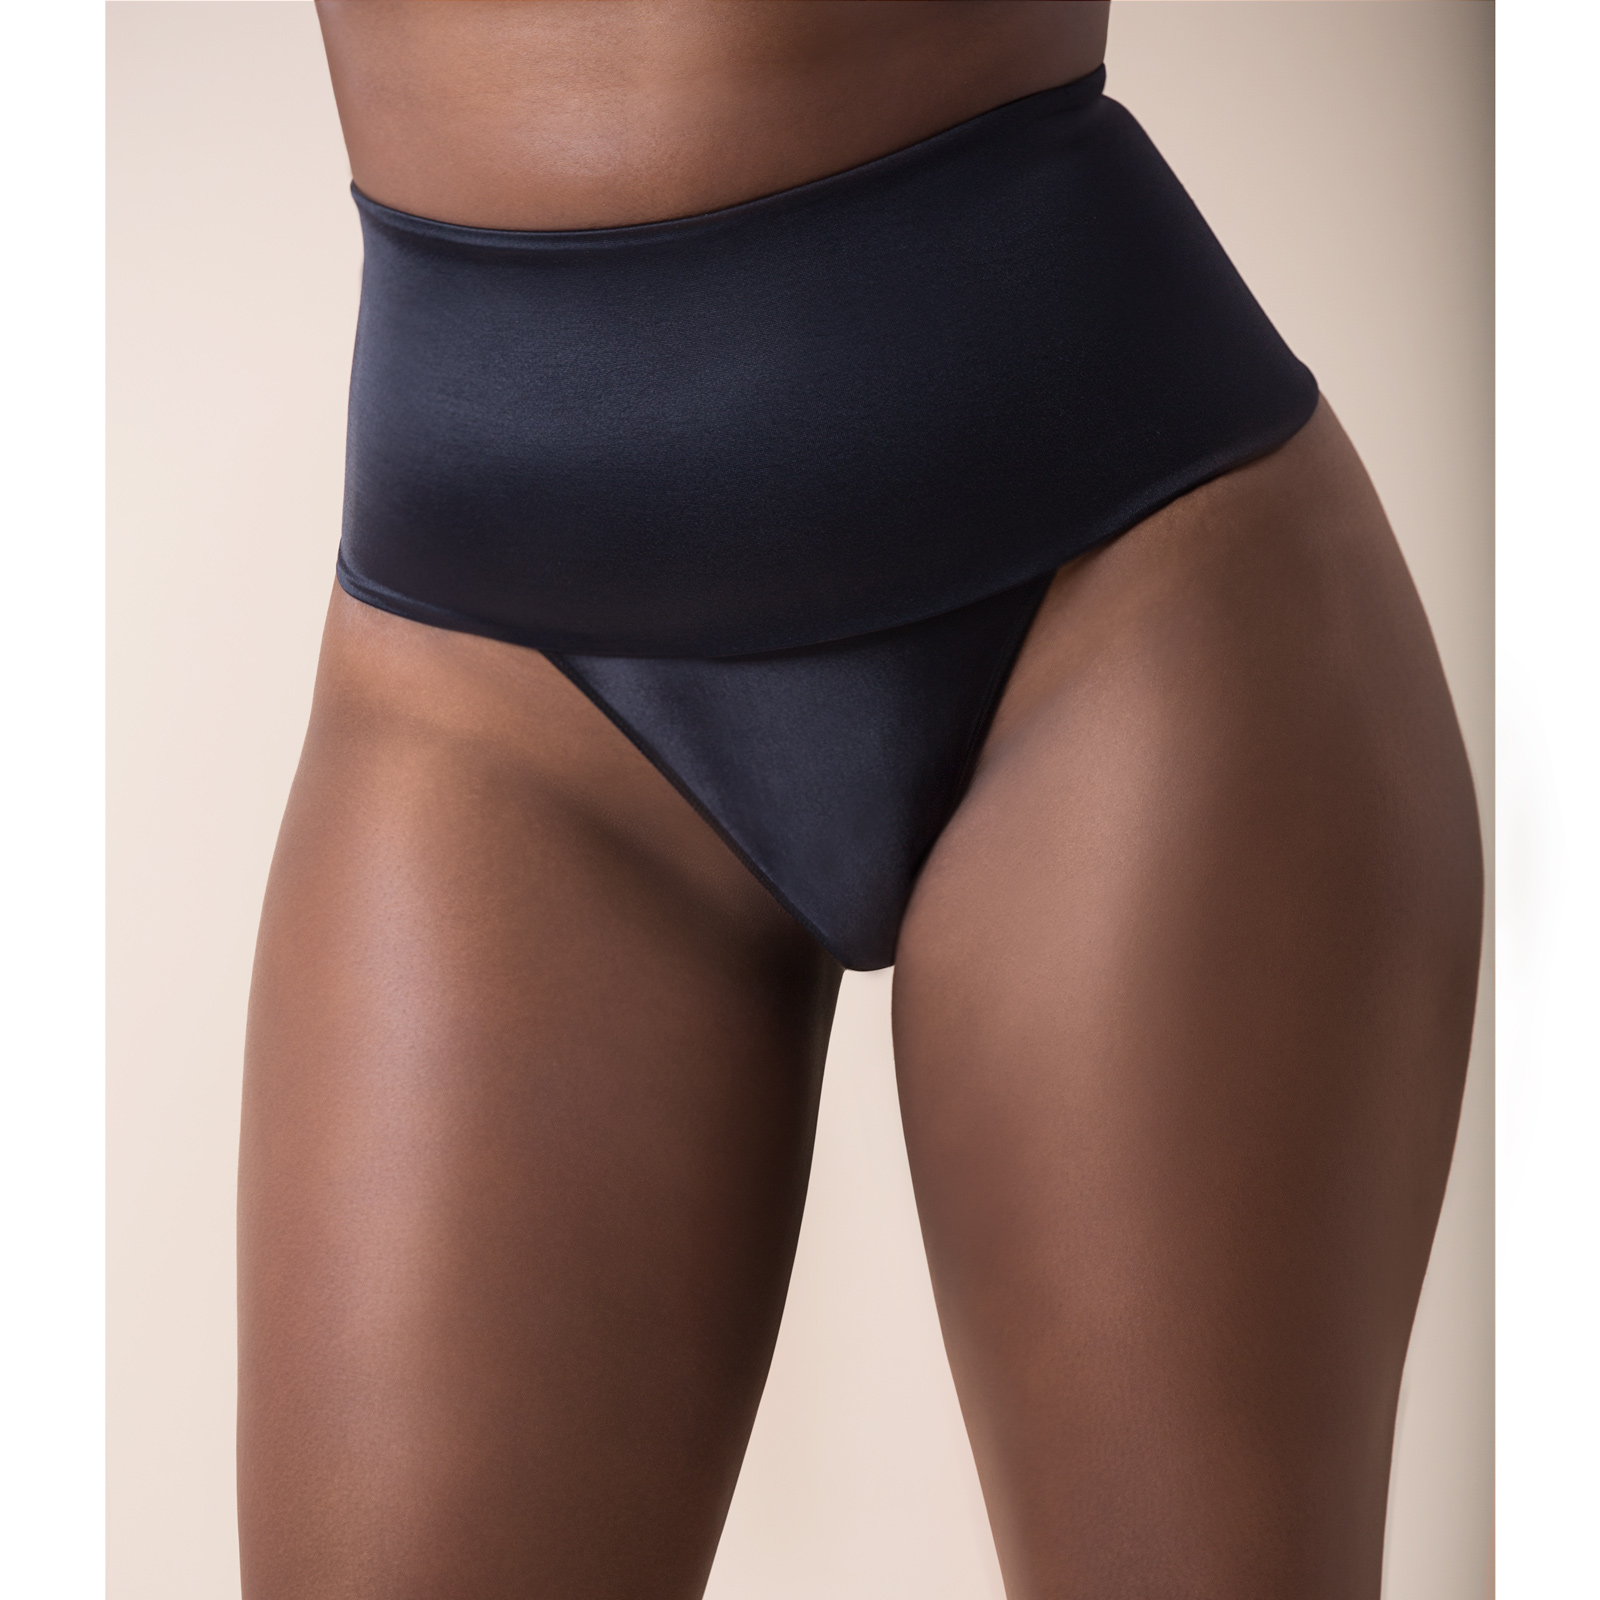 4-pad- padded panty – Lulu Lingerie Nigeria, Buy online Bras, Underwear,  Sleepwear- LuLu Lingerie Limited